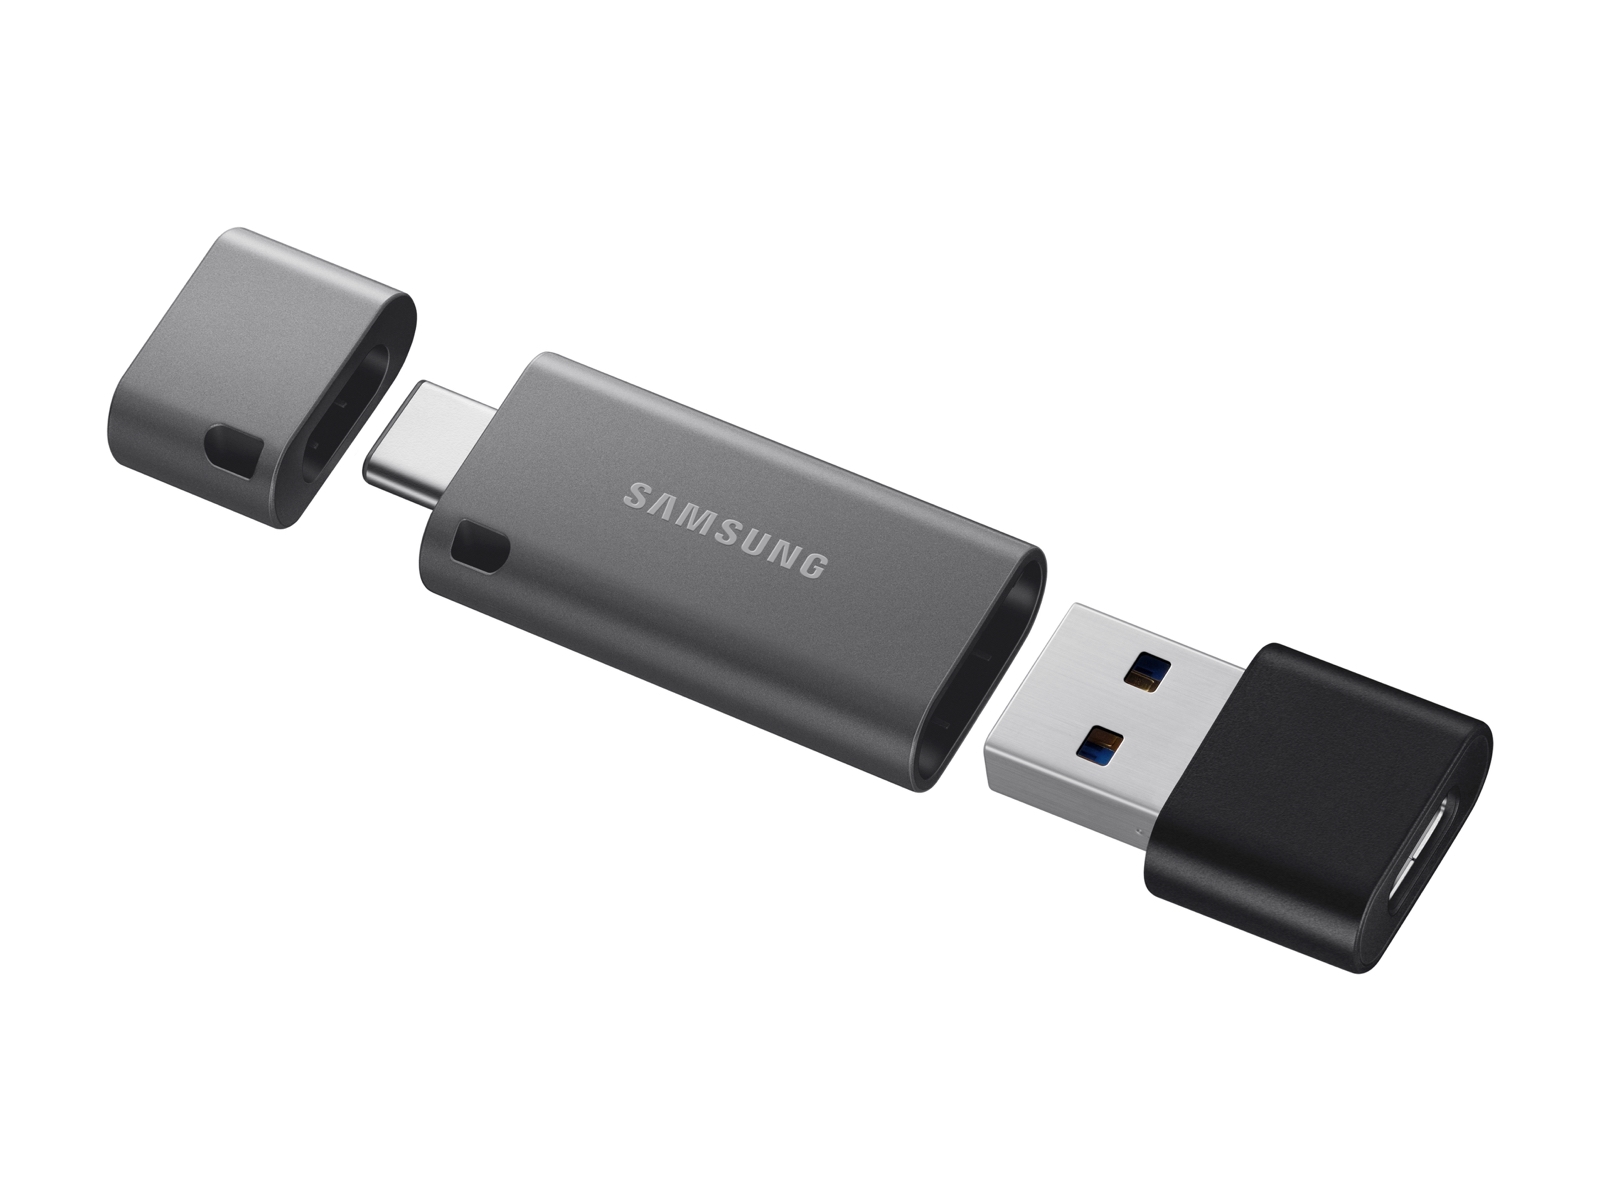 Pendrive USB Memoria USB 128GB,Pen Drive Pendrive USB C,Ultra